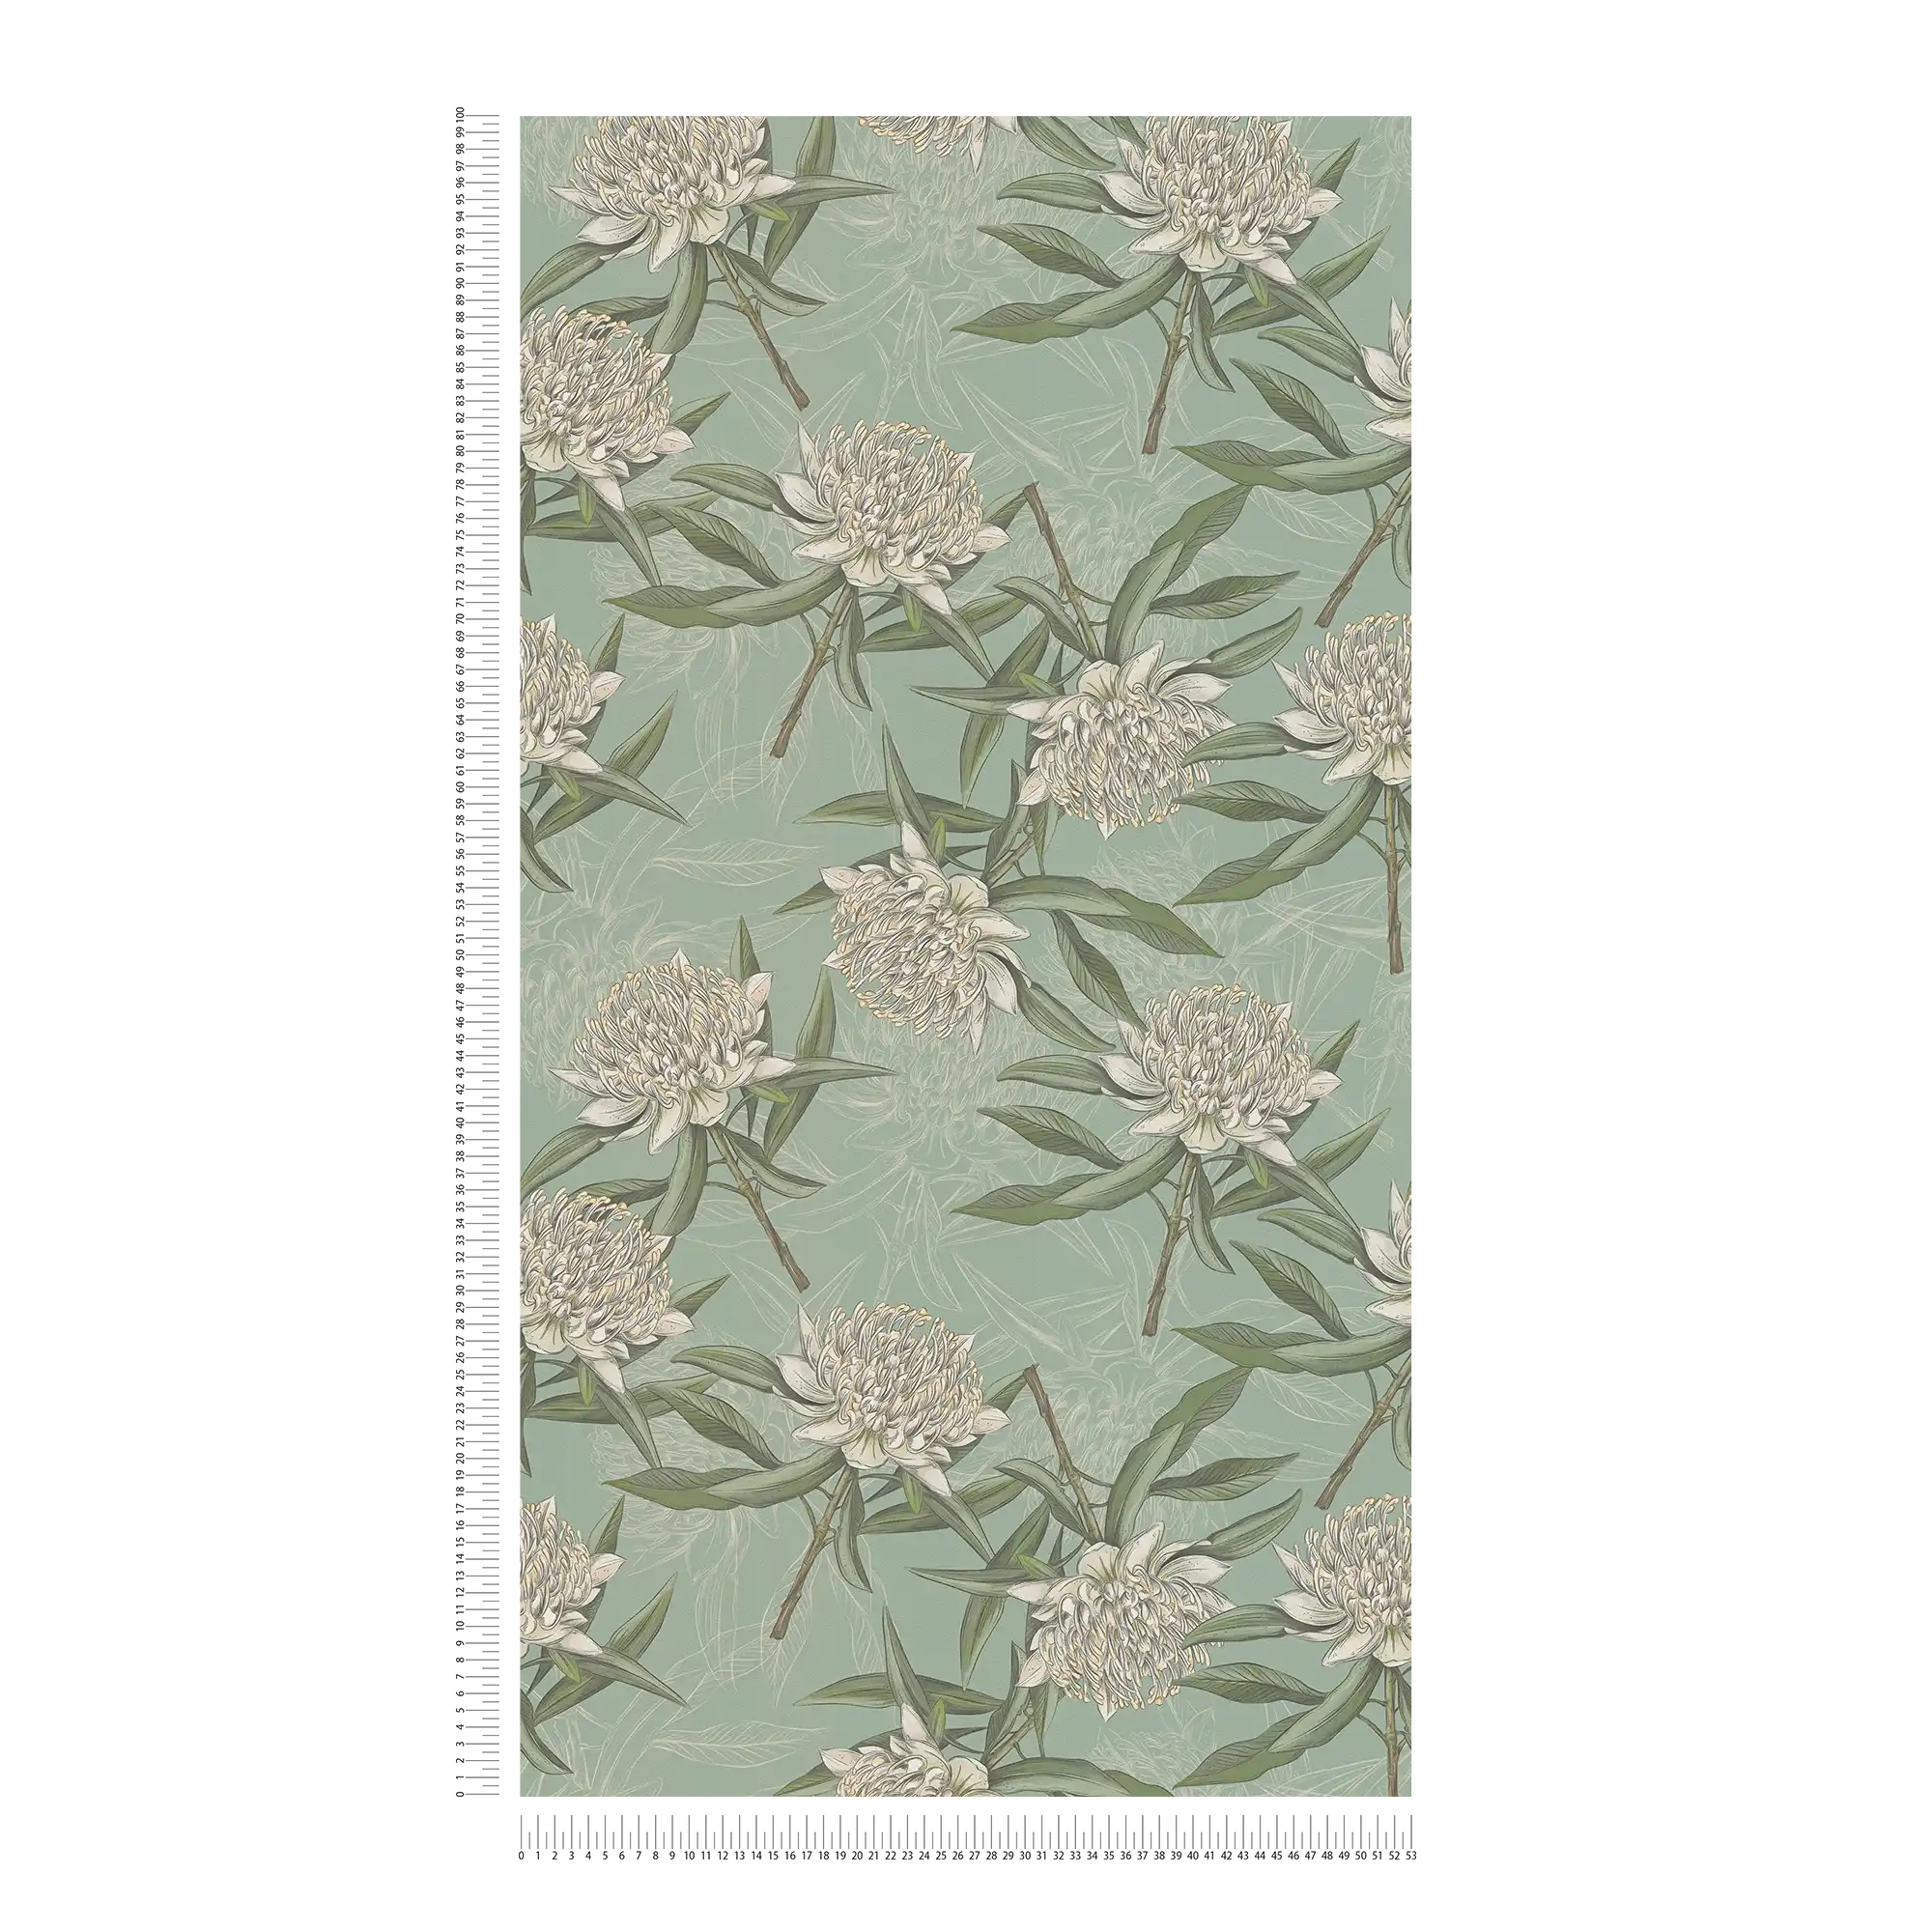             Florale Tapete mit Blättern & Blumen strukturiert matt – Blau, Grün, Weiß
        